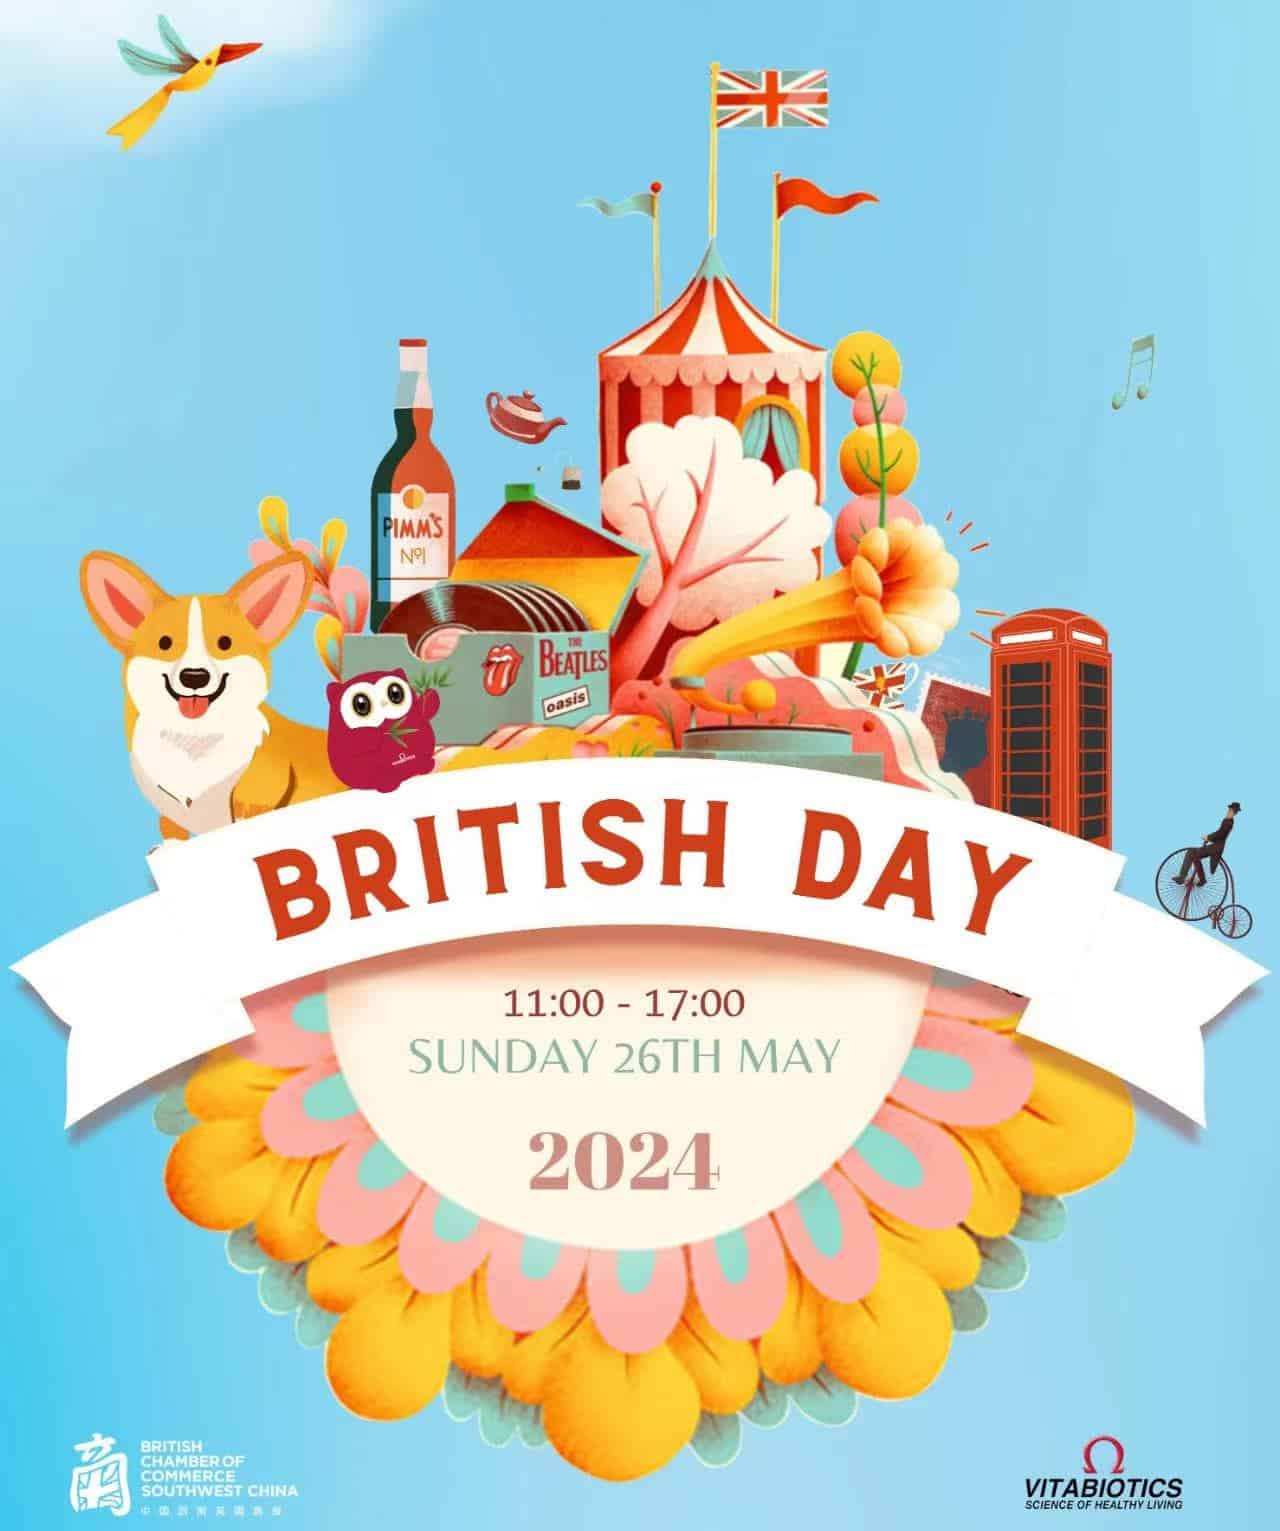 British Day 2024 chengdu expat 1